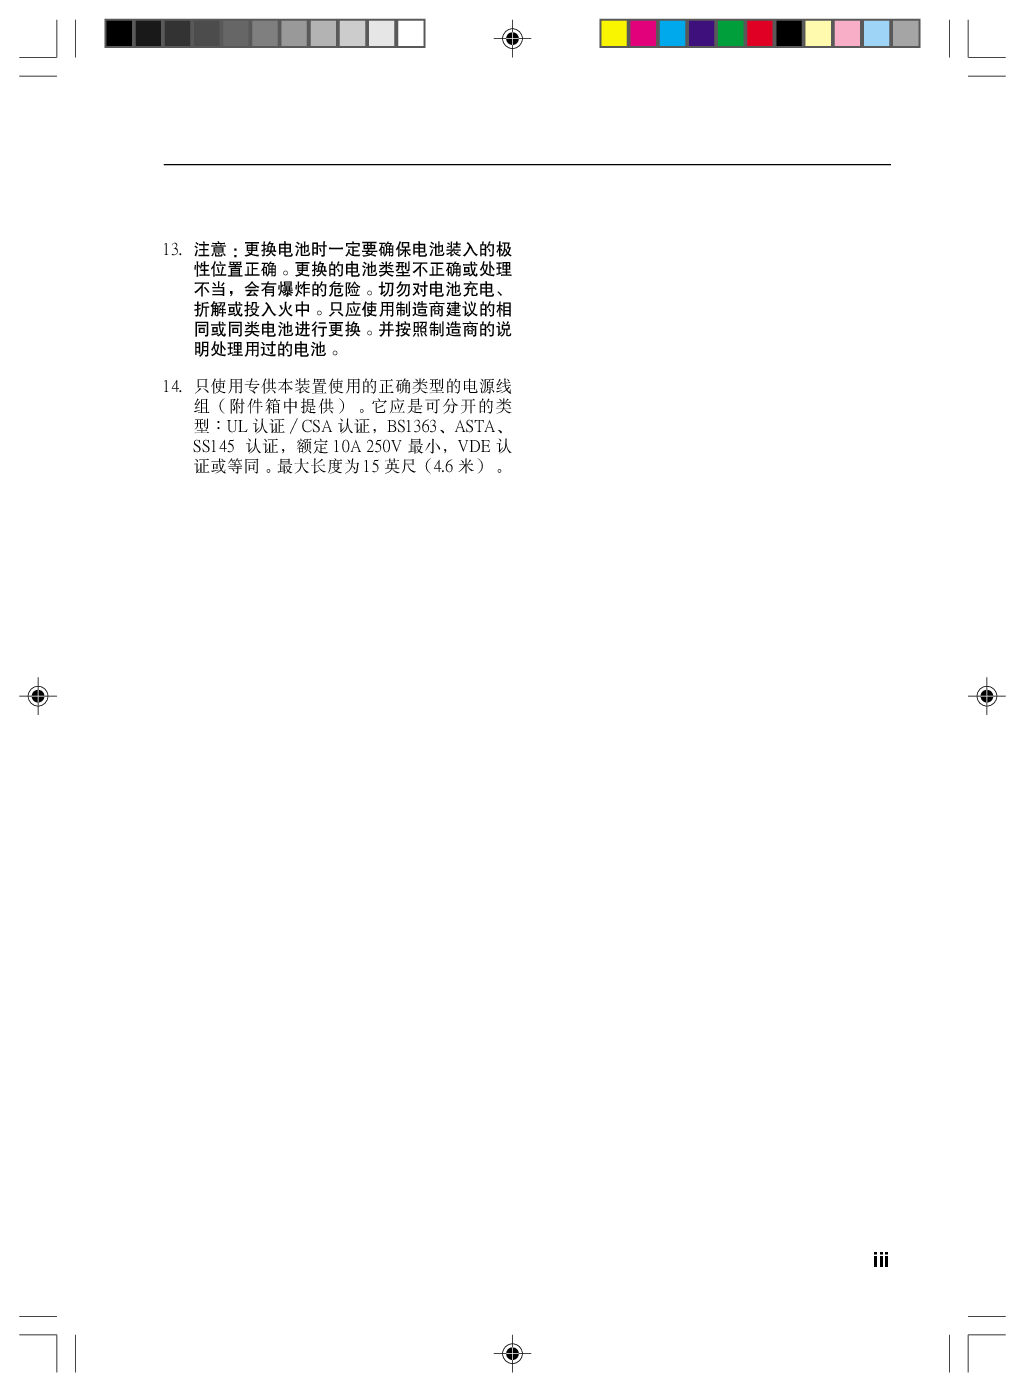 富士通 Fujitsu LifeBook A6120 Windows Vista 使用说明书 第2页